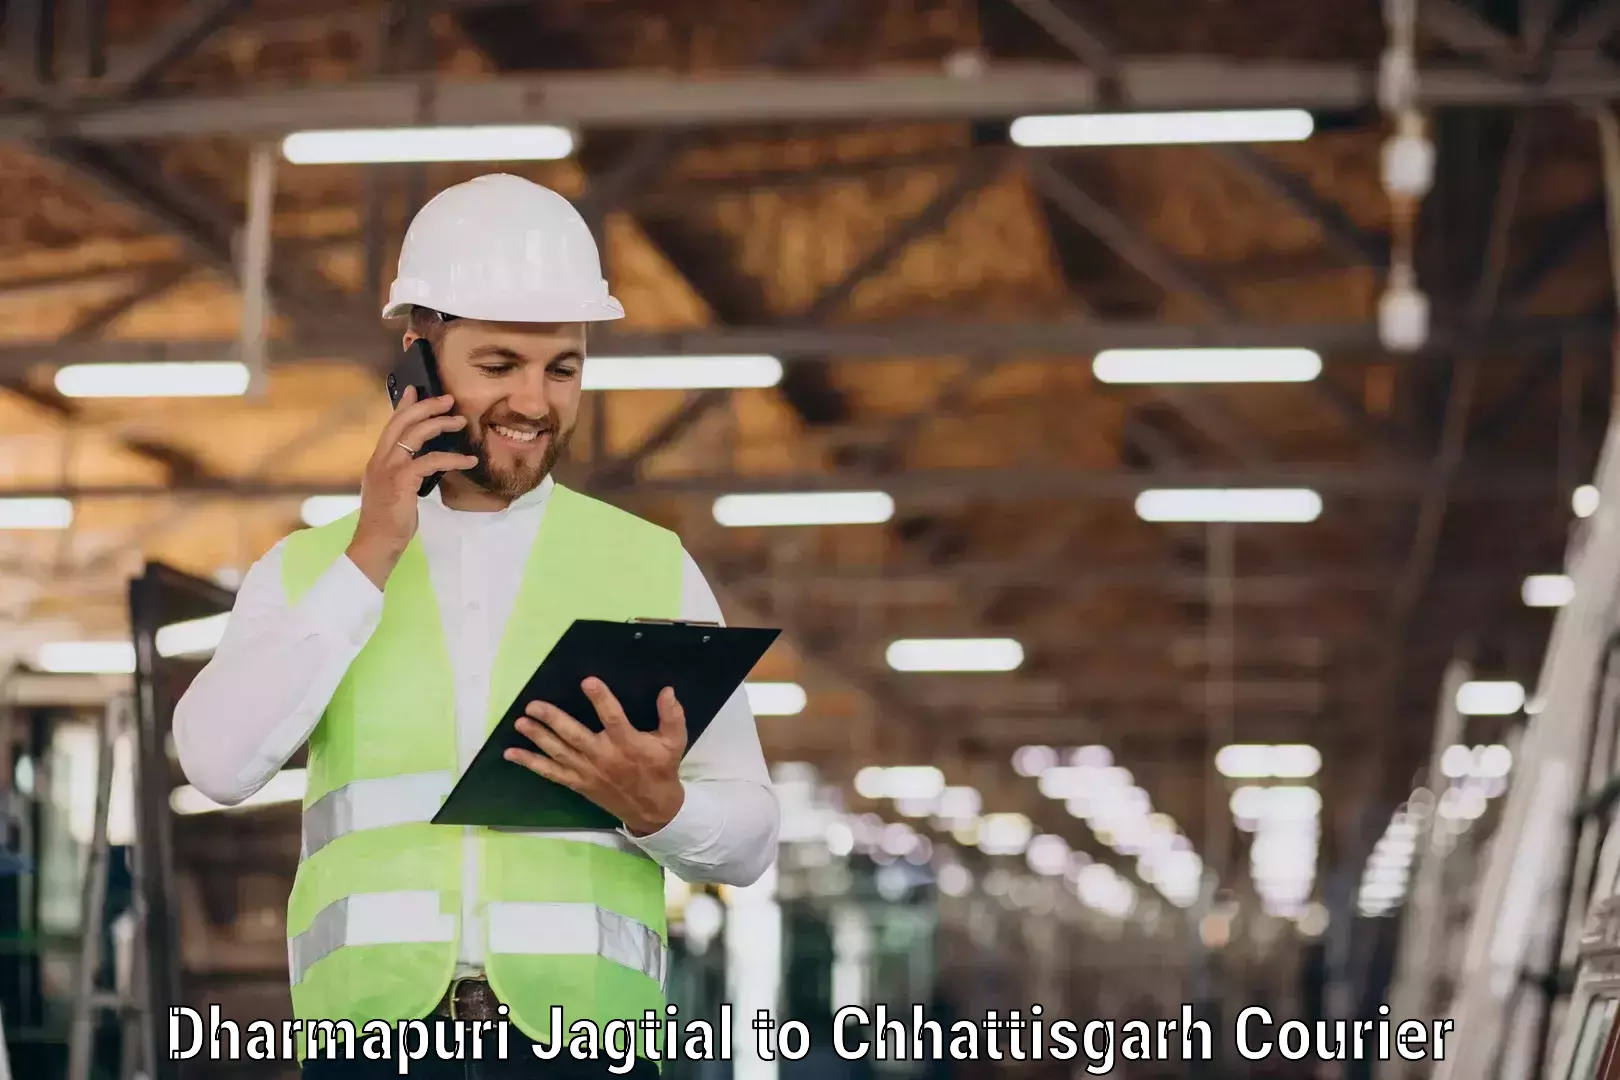 Custom courier solutions Dharmapuri Jagtial to Dhamtari